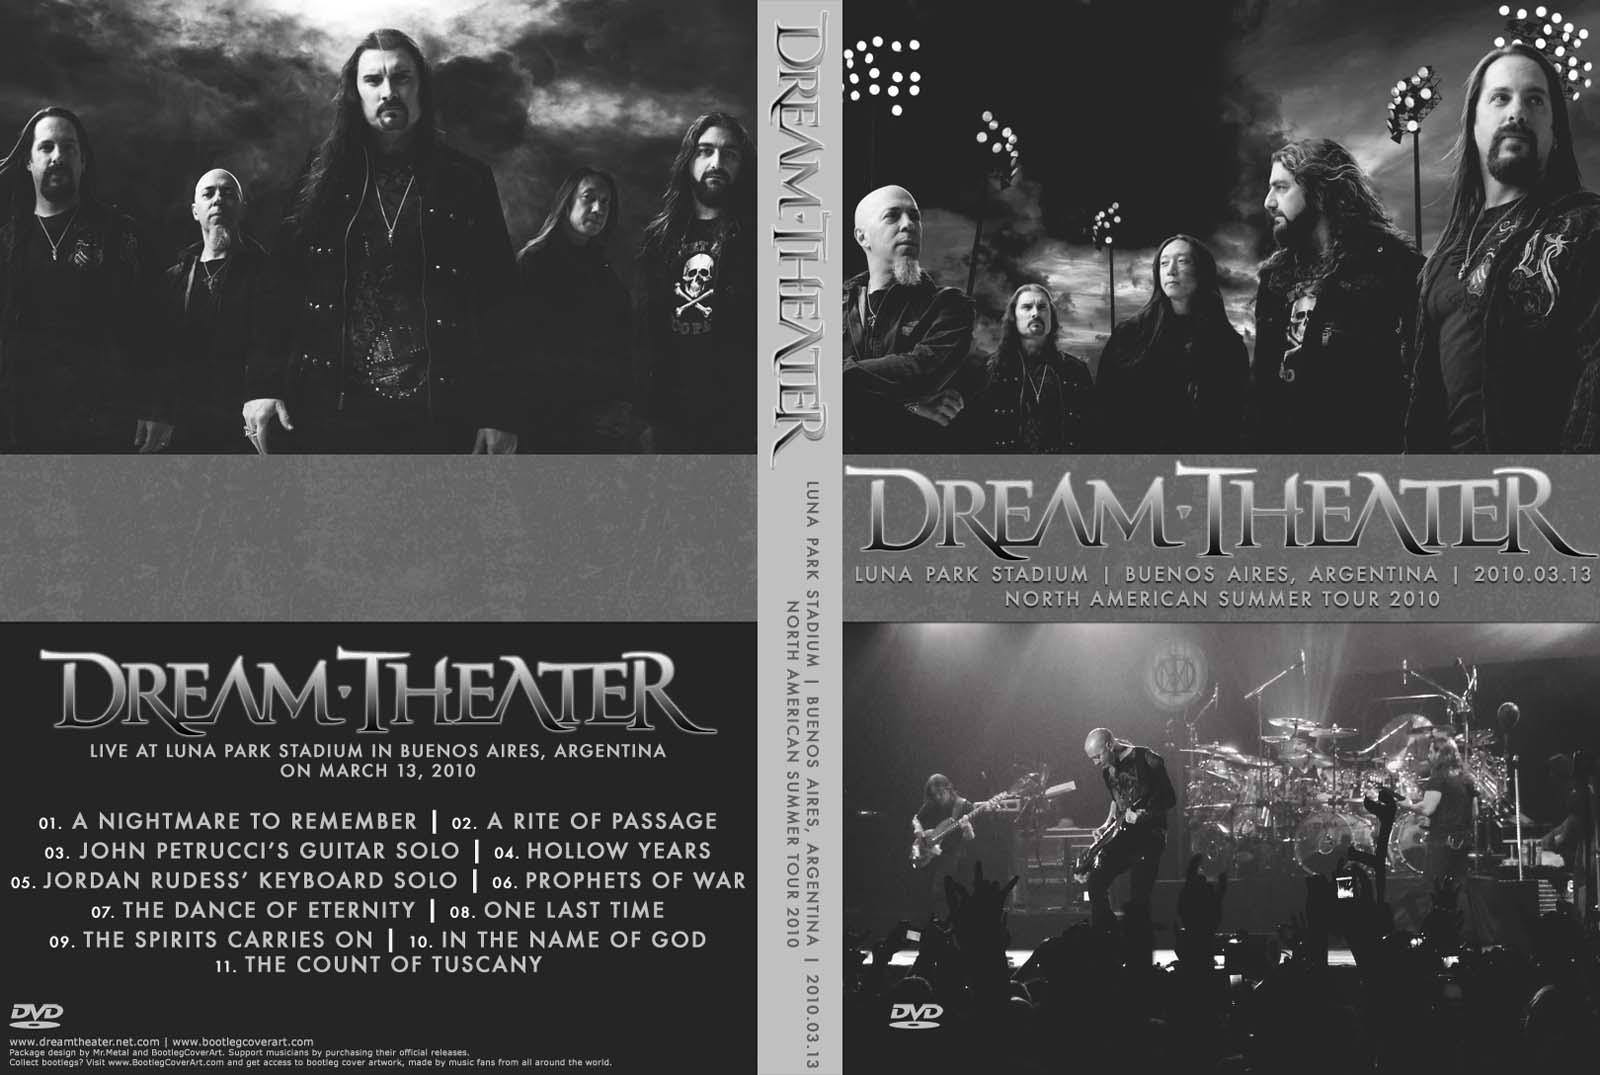 http://4.bp.blogspot.com/_j92JYU6EuQY/TUxnnLTUBGI/AAAAAAAACQo/ExhRghZXZnI/s1600/DVD+Cover+-+DreamTheater_2010-03-13_BuenosAiresArgentina.jpg